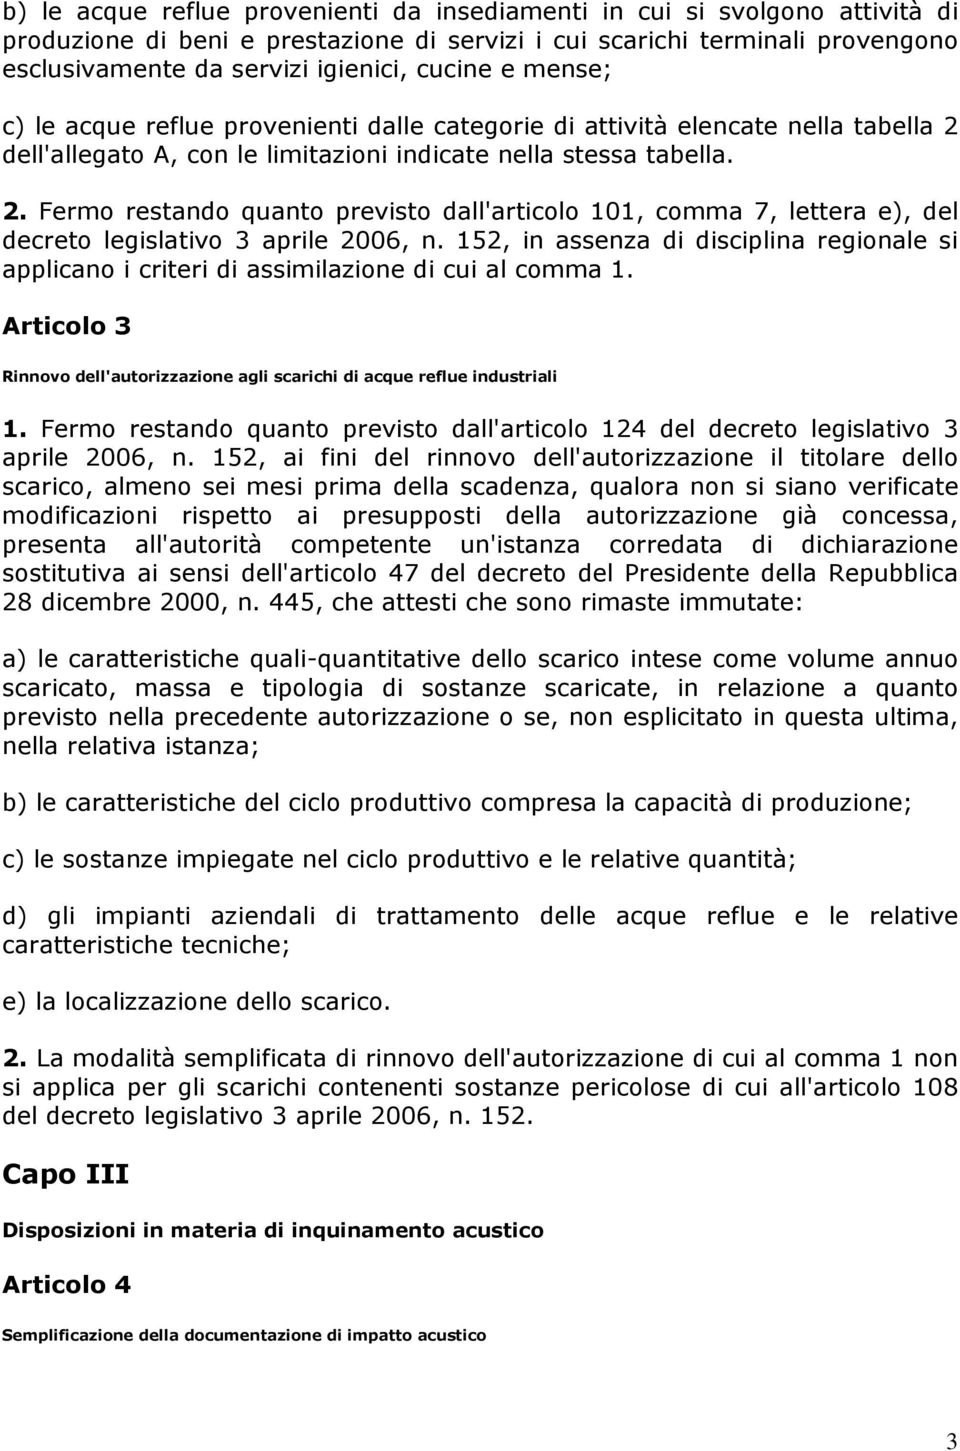 dell'allegato A, con le limitazioni indicate nella stessa tabella. 2. Fermo restando quanto previsto dall'articolo 101, comma 7, lettera e), del decreto legislativo 3 aprile 2006, n.